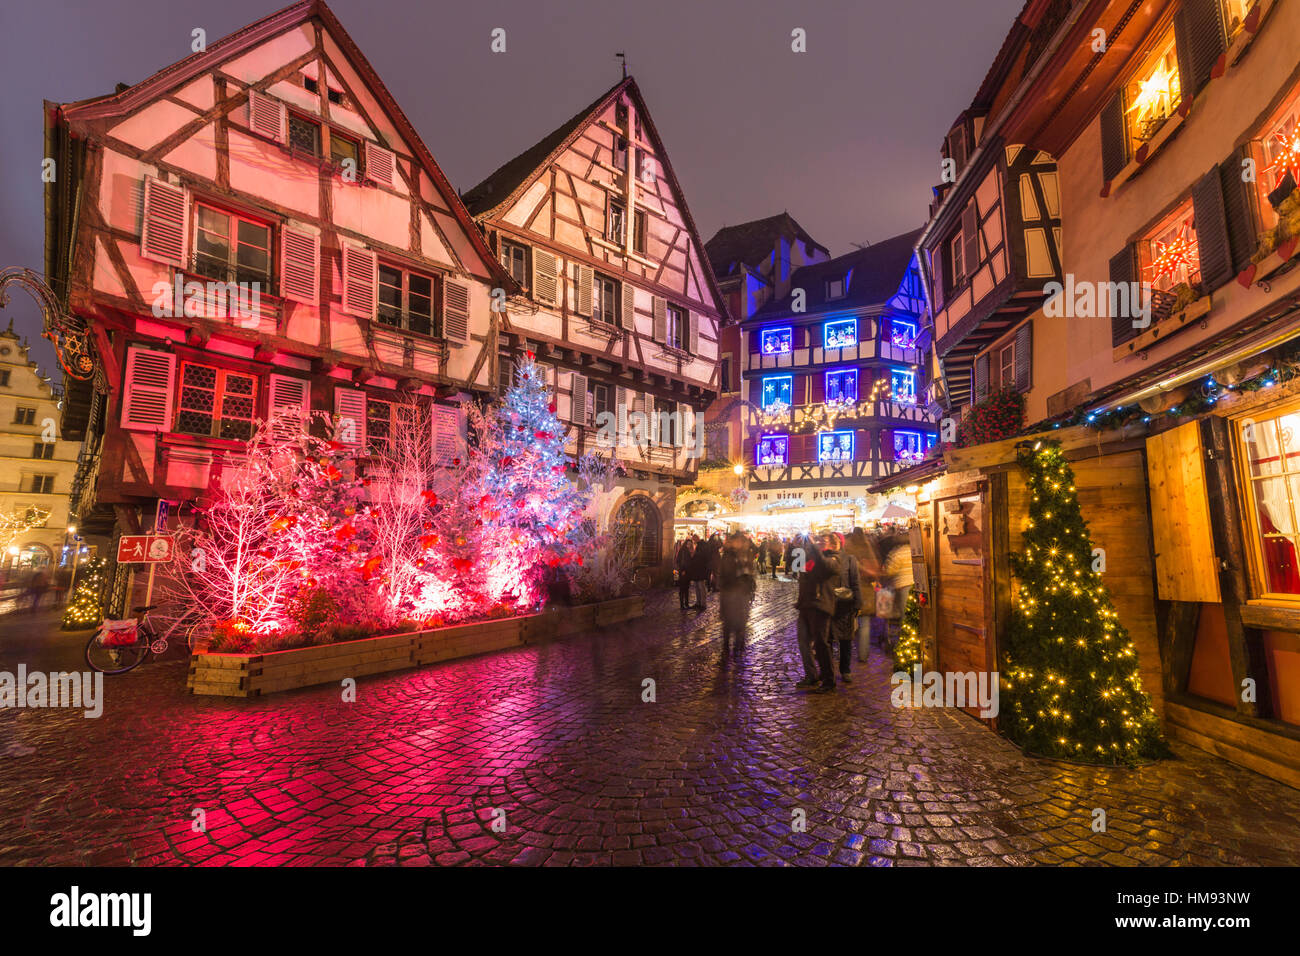 Maisons typiques enrichi par des ornements de Noël et des lumières au crépuscule, Colmar, Haut-Rhin, Alsace, France Banque D'Images